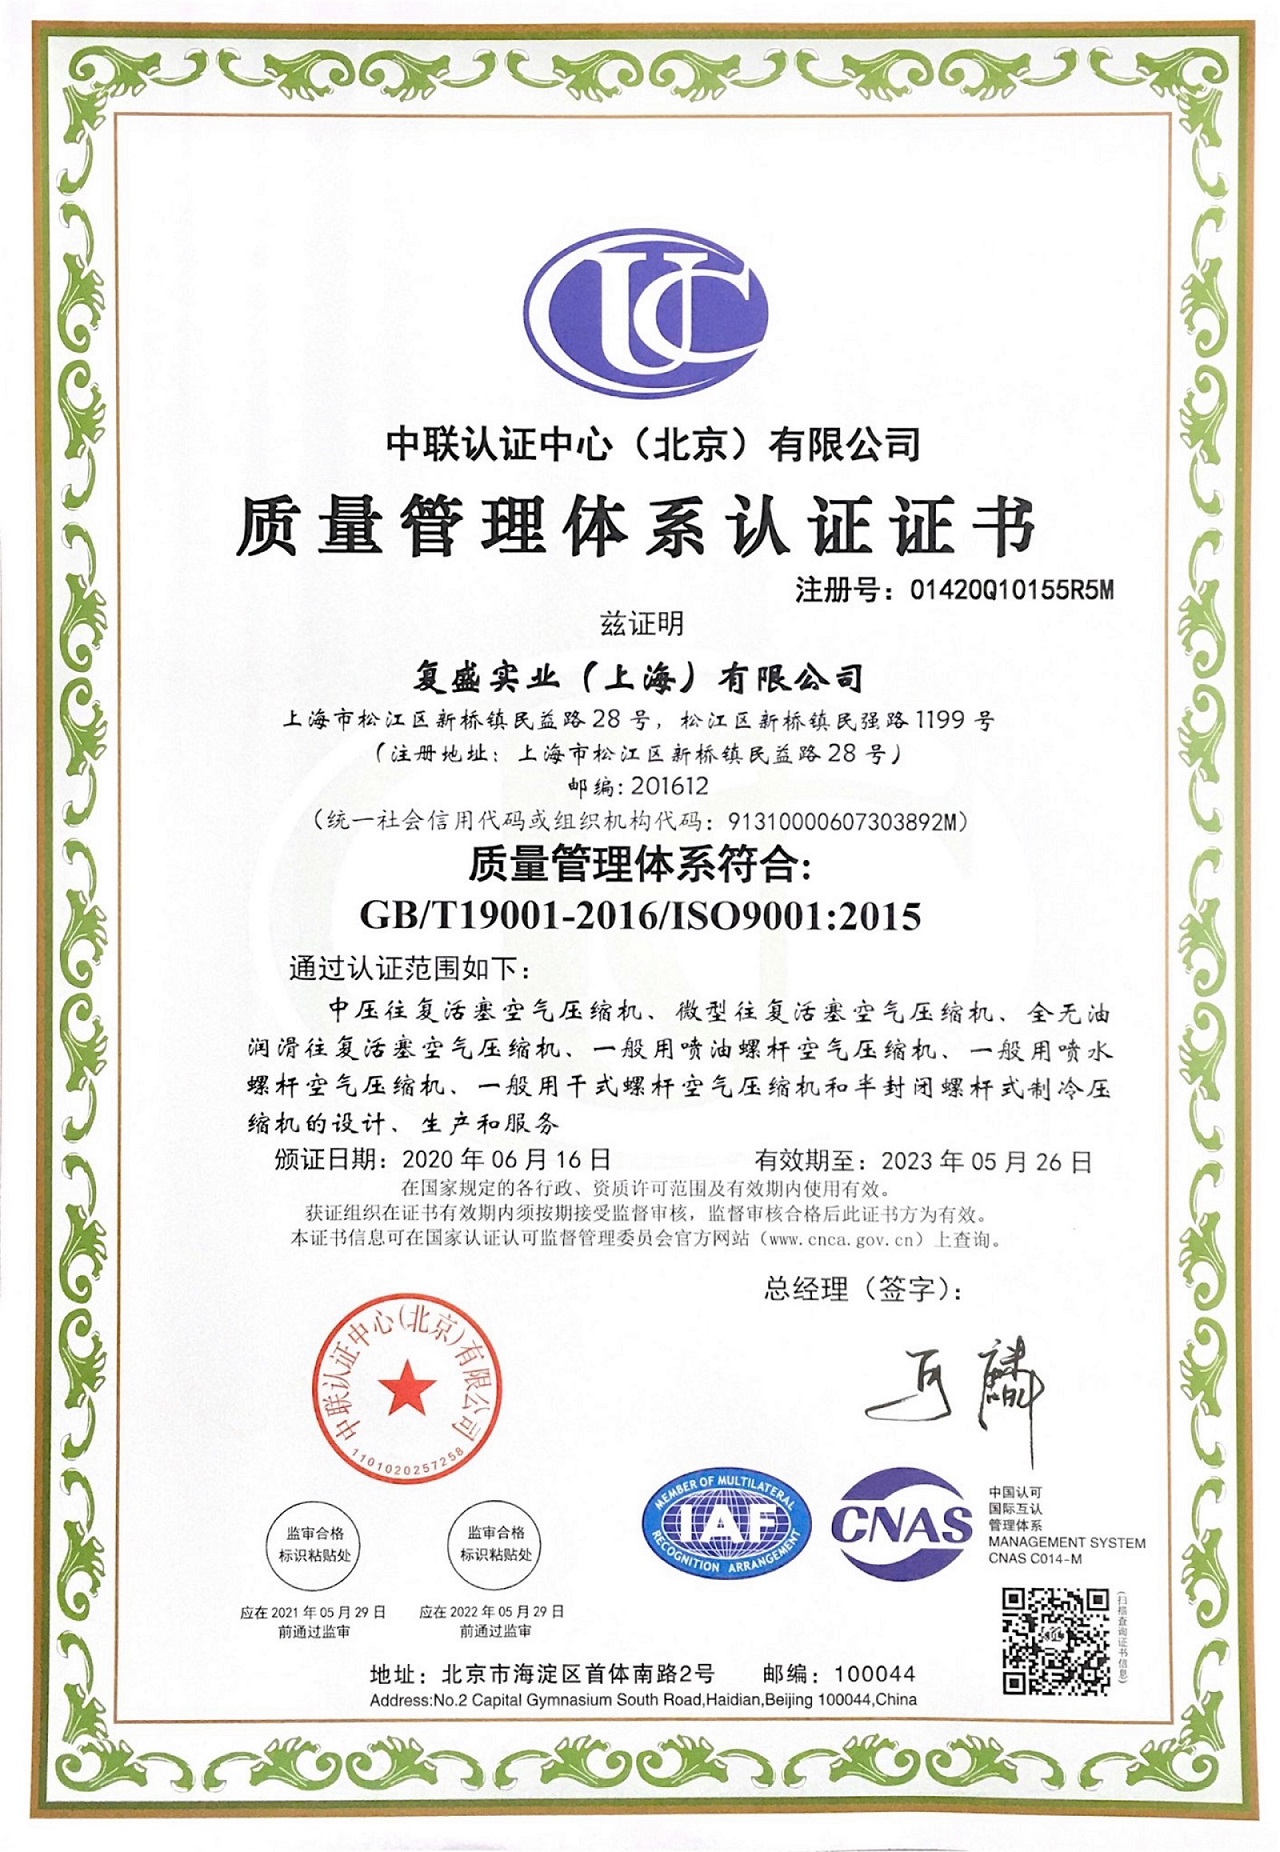 上海复盛空压机_质量管理体系认证证书_中文_202305.jpg